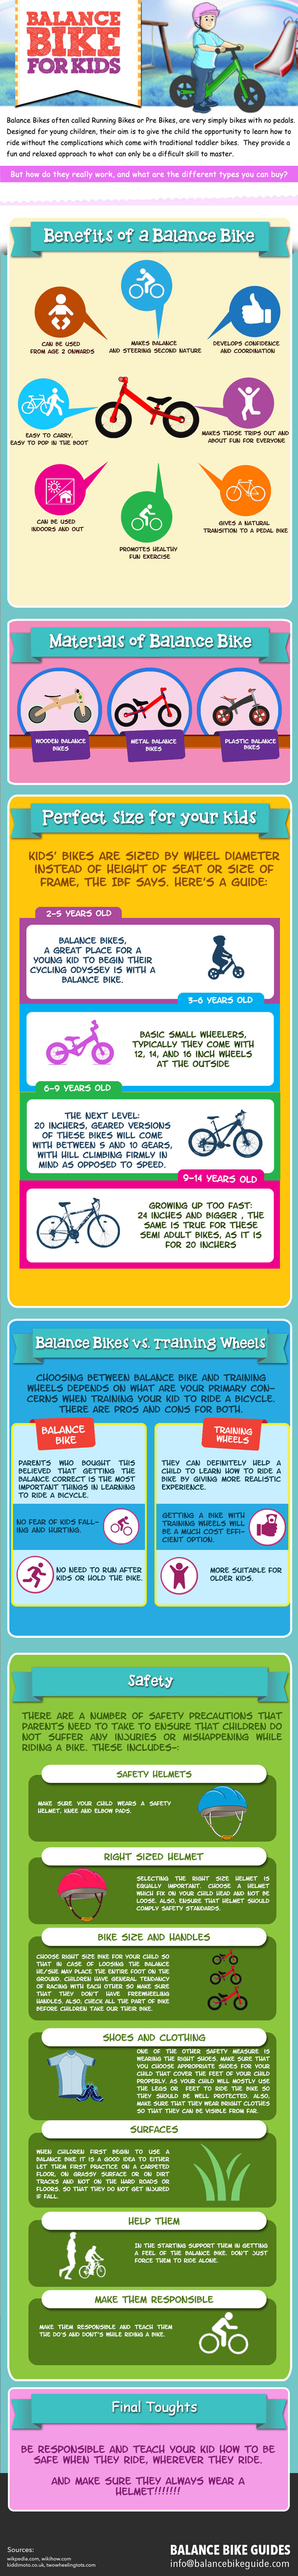 balance-bikes